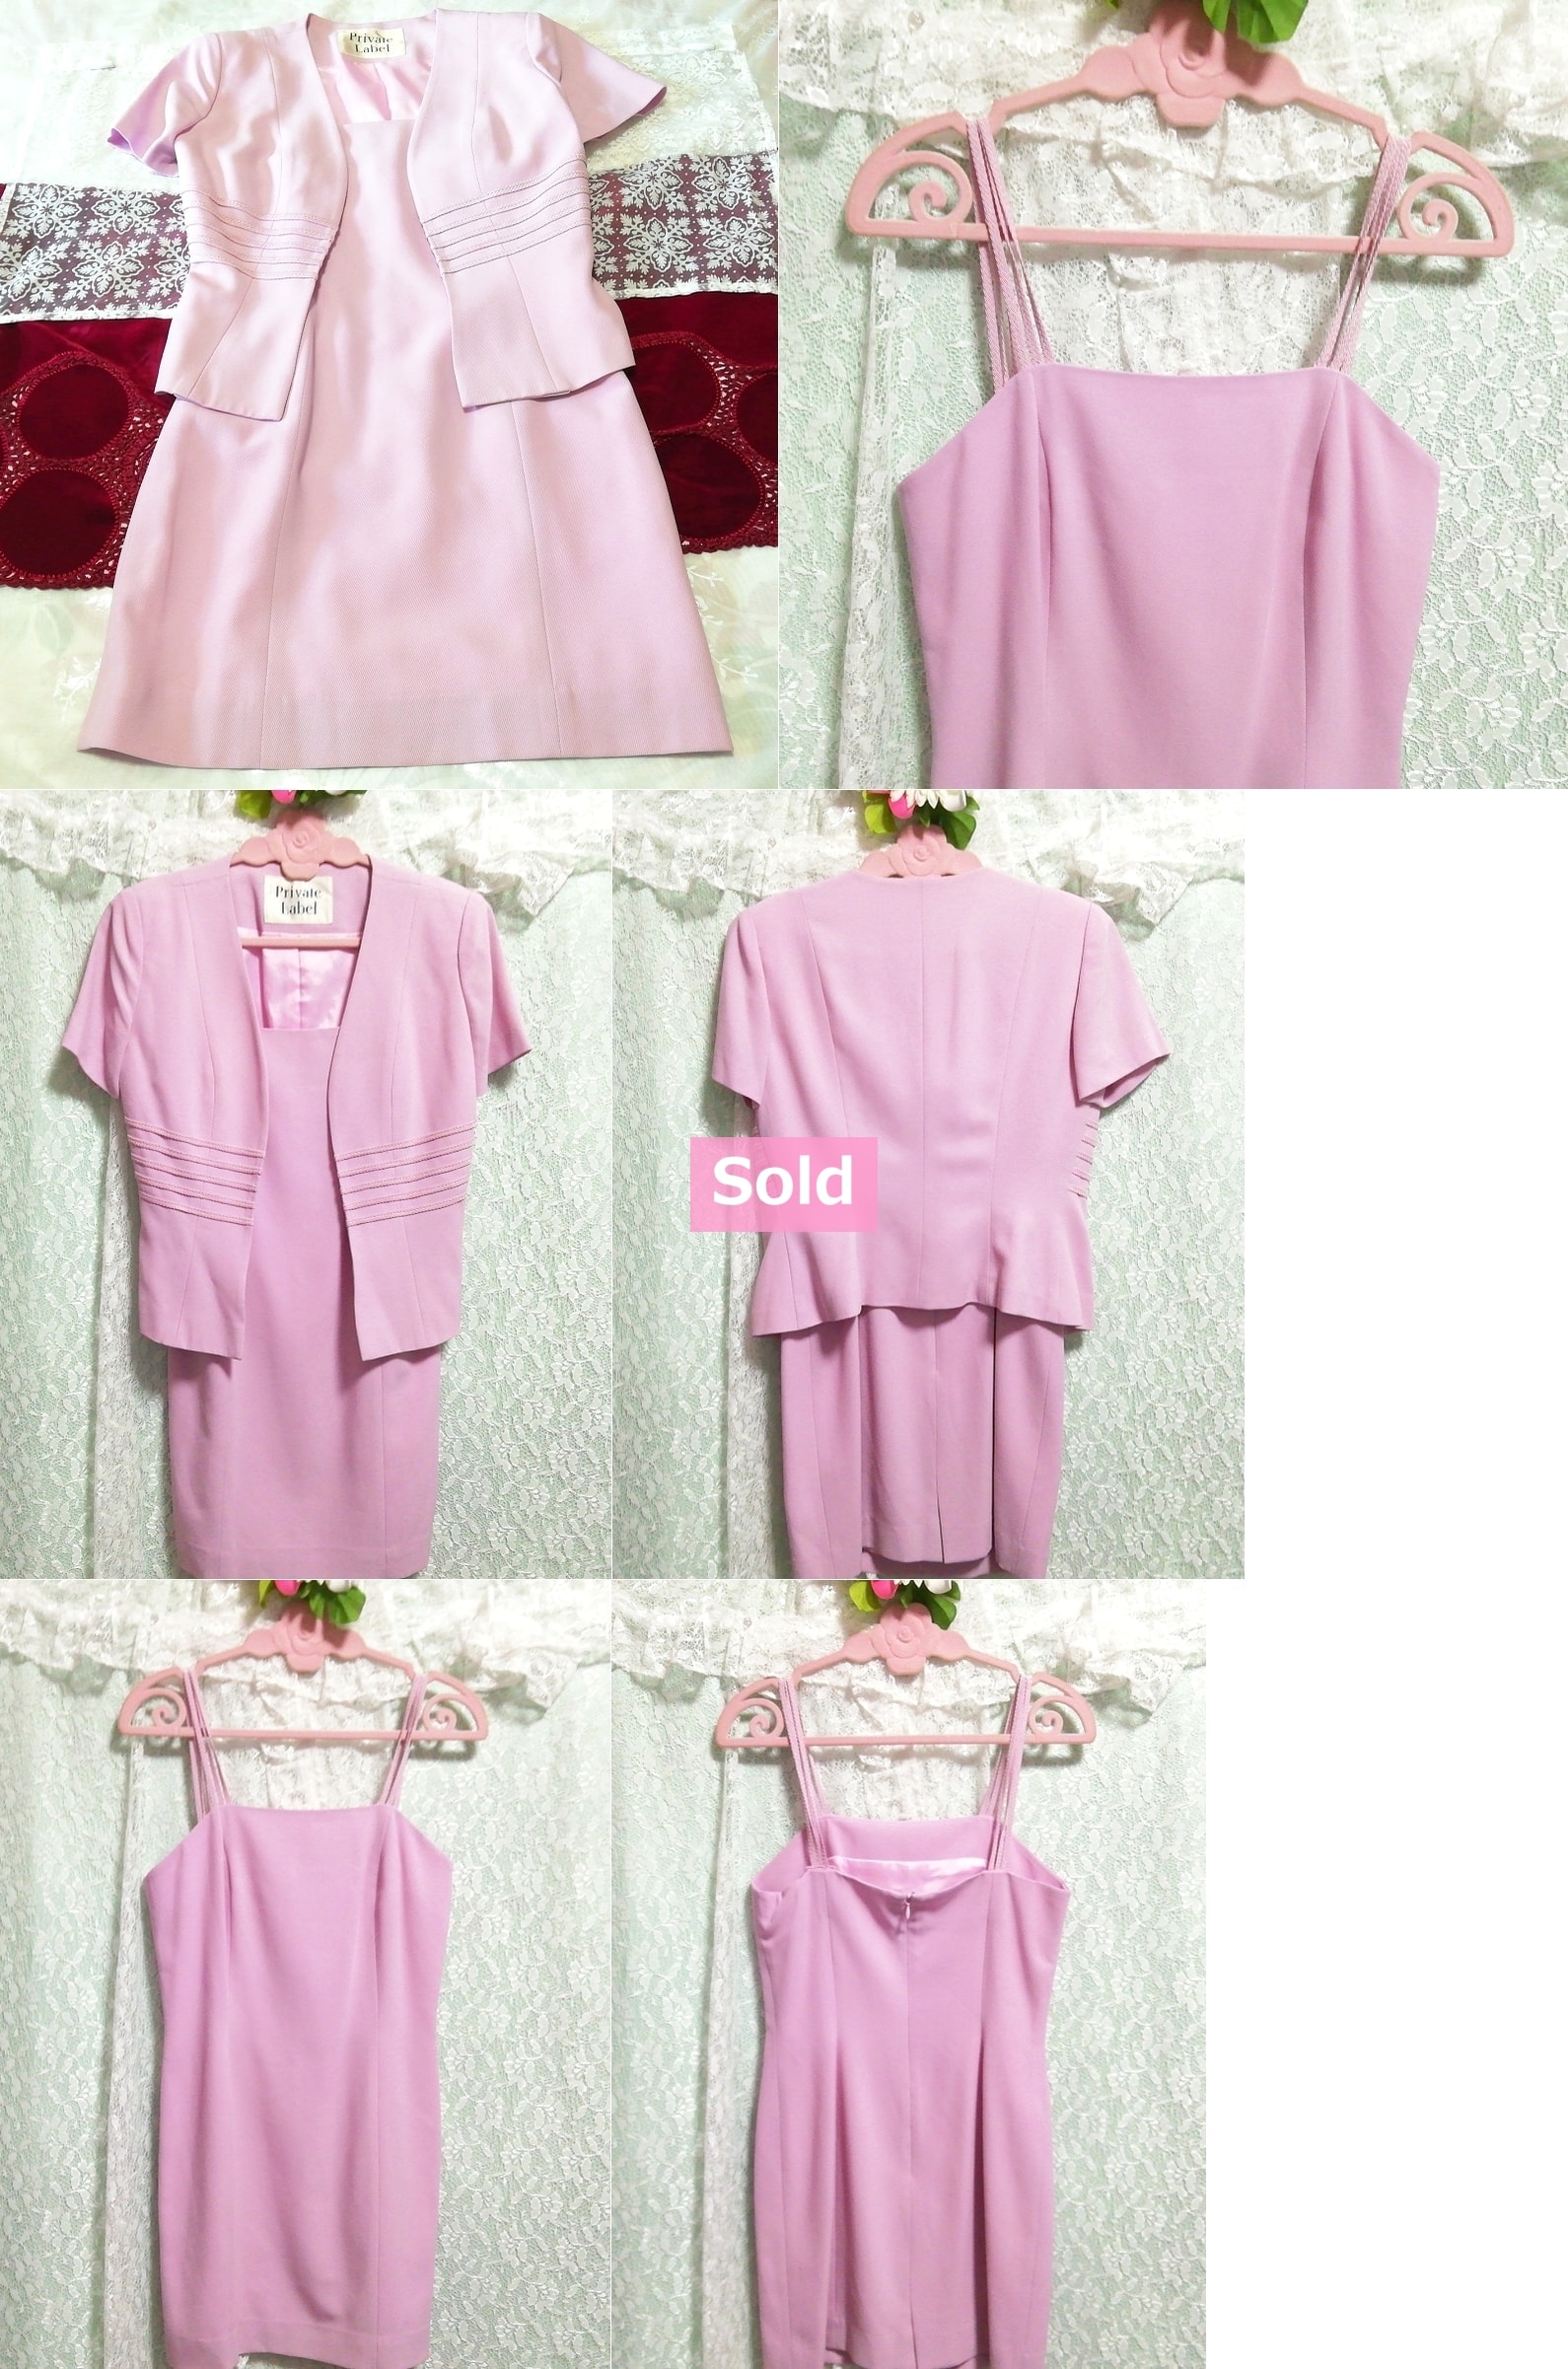 ピンクスーツ2セット キャミソールワンピース カーディガン 日本製 Pink suits 2 set camisole dress cardigan made in japan, レディースファッション, スーツ, ひざ丈スカート